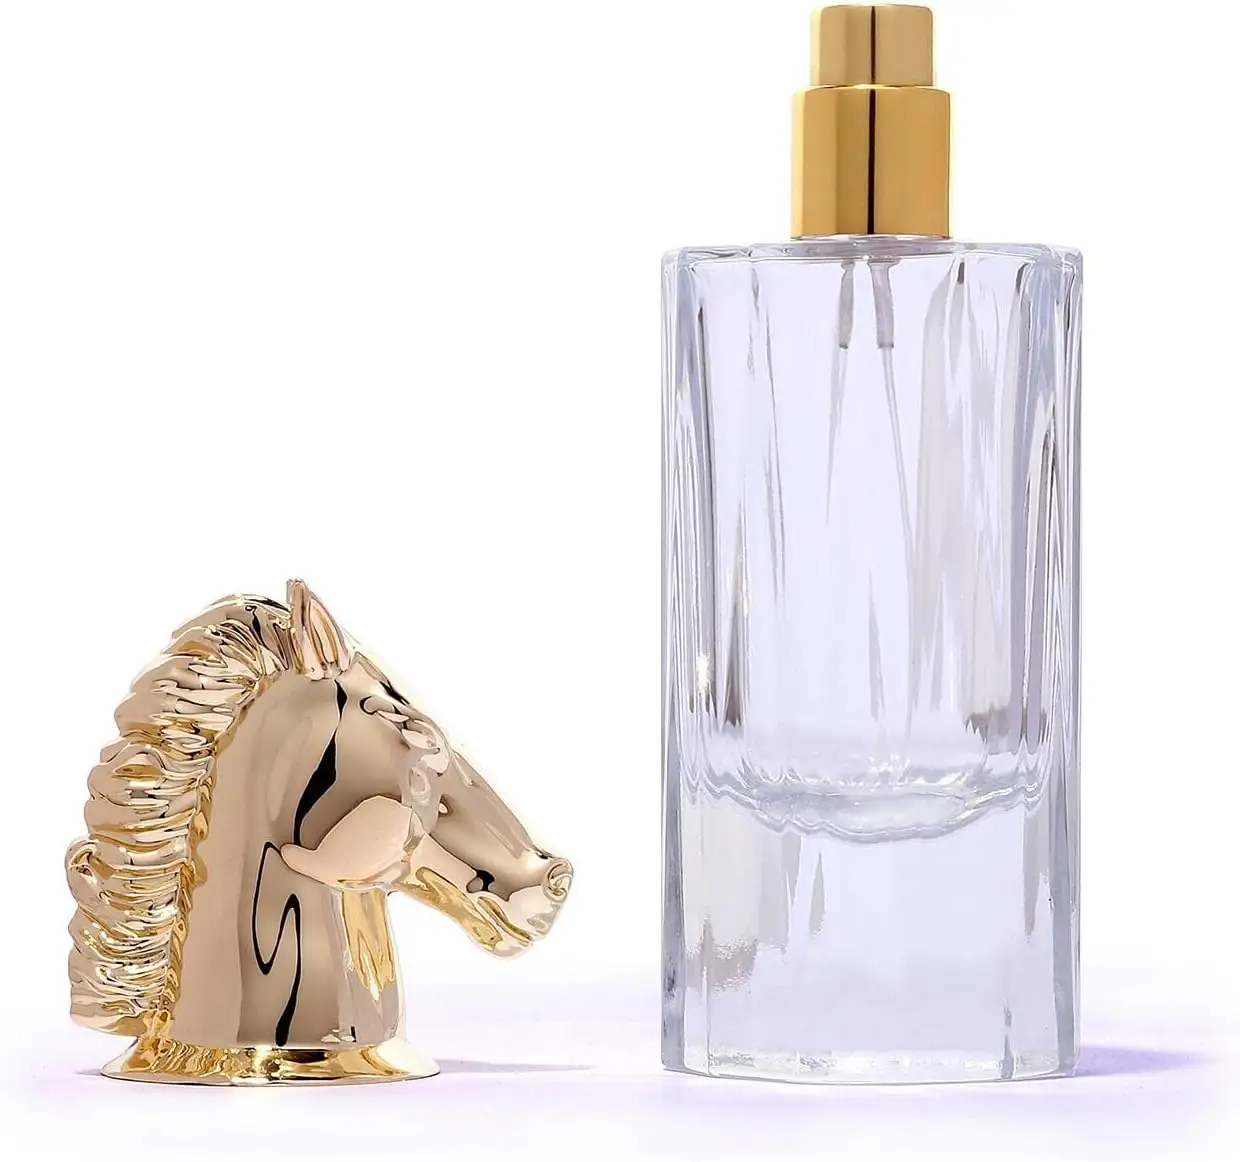 زجاجة بخاخة قابلة لإعادة الملء من الزجاج النقي, زجاجة بخاخة معدنية ذهبية اللون يمكن إعادة ملء رأس الحصان ، زجاجة بخاخة من المعدن من صانعي المعدات الأصلية ، 50